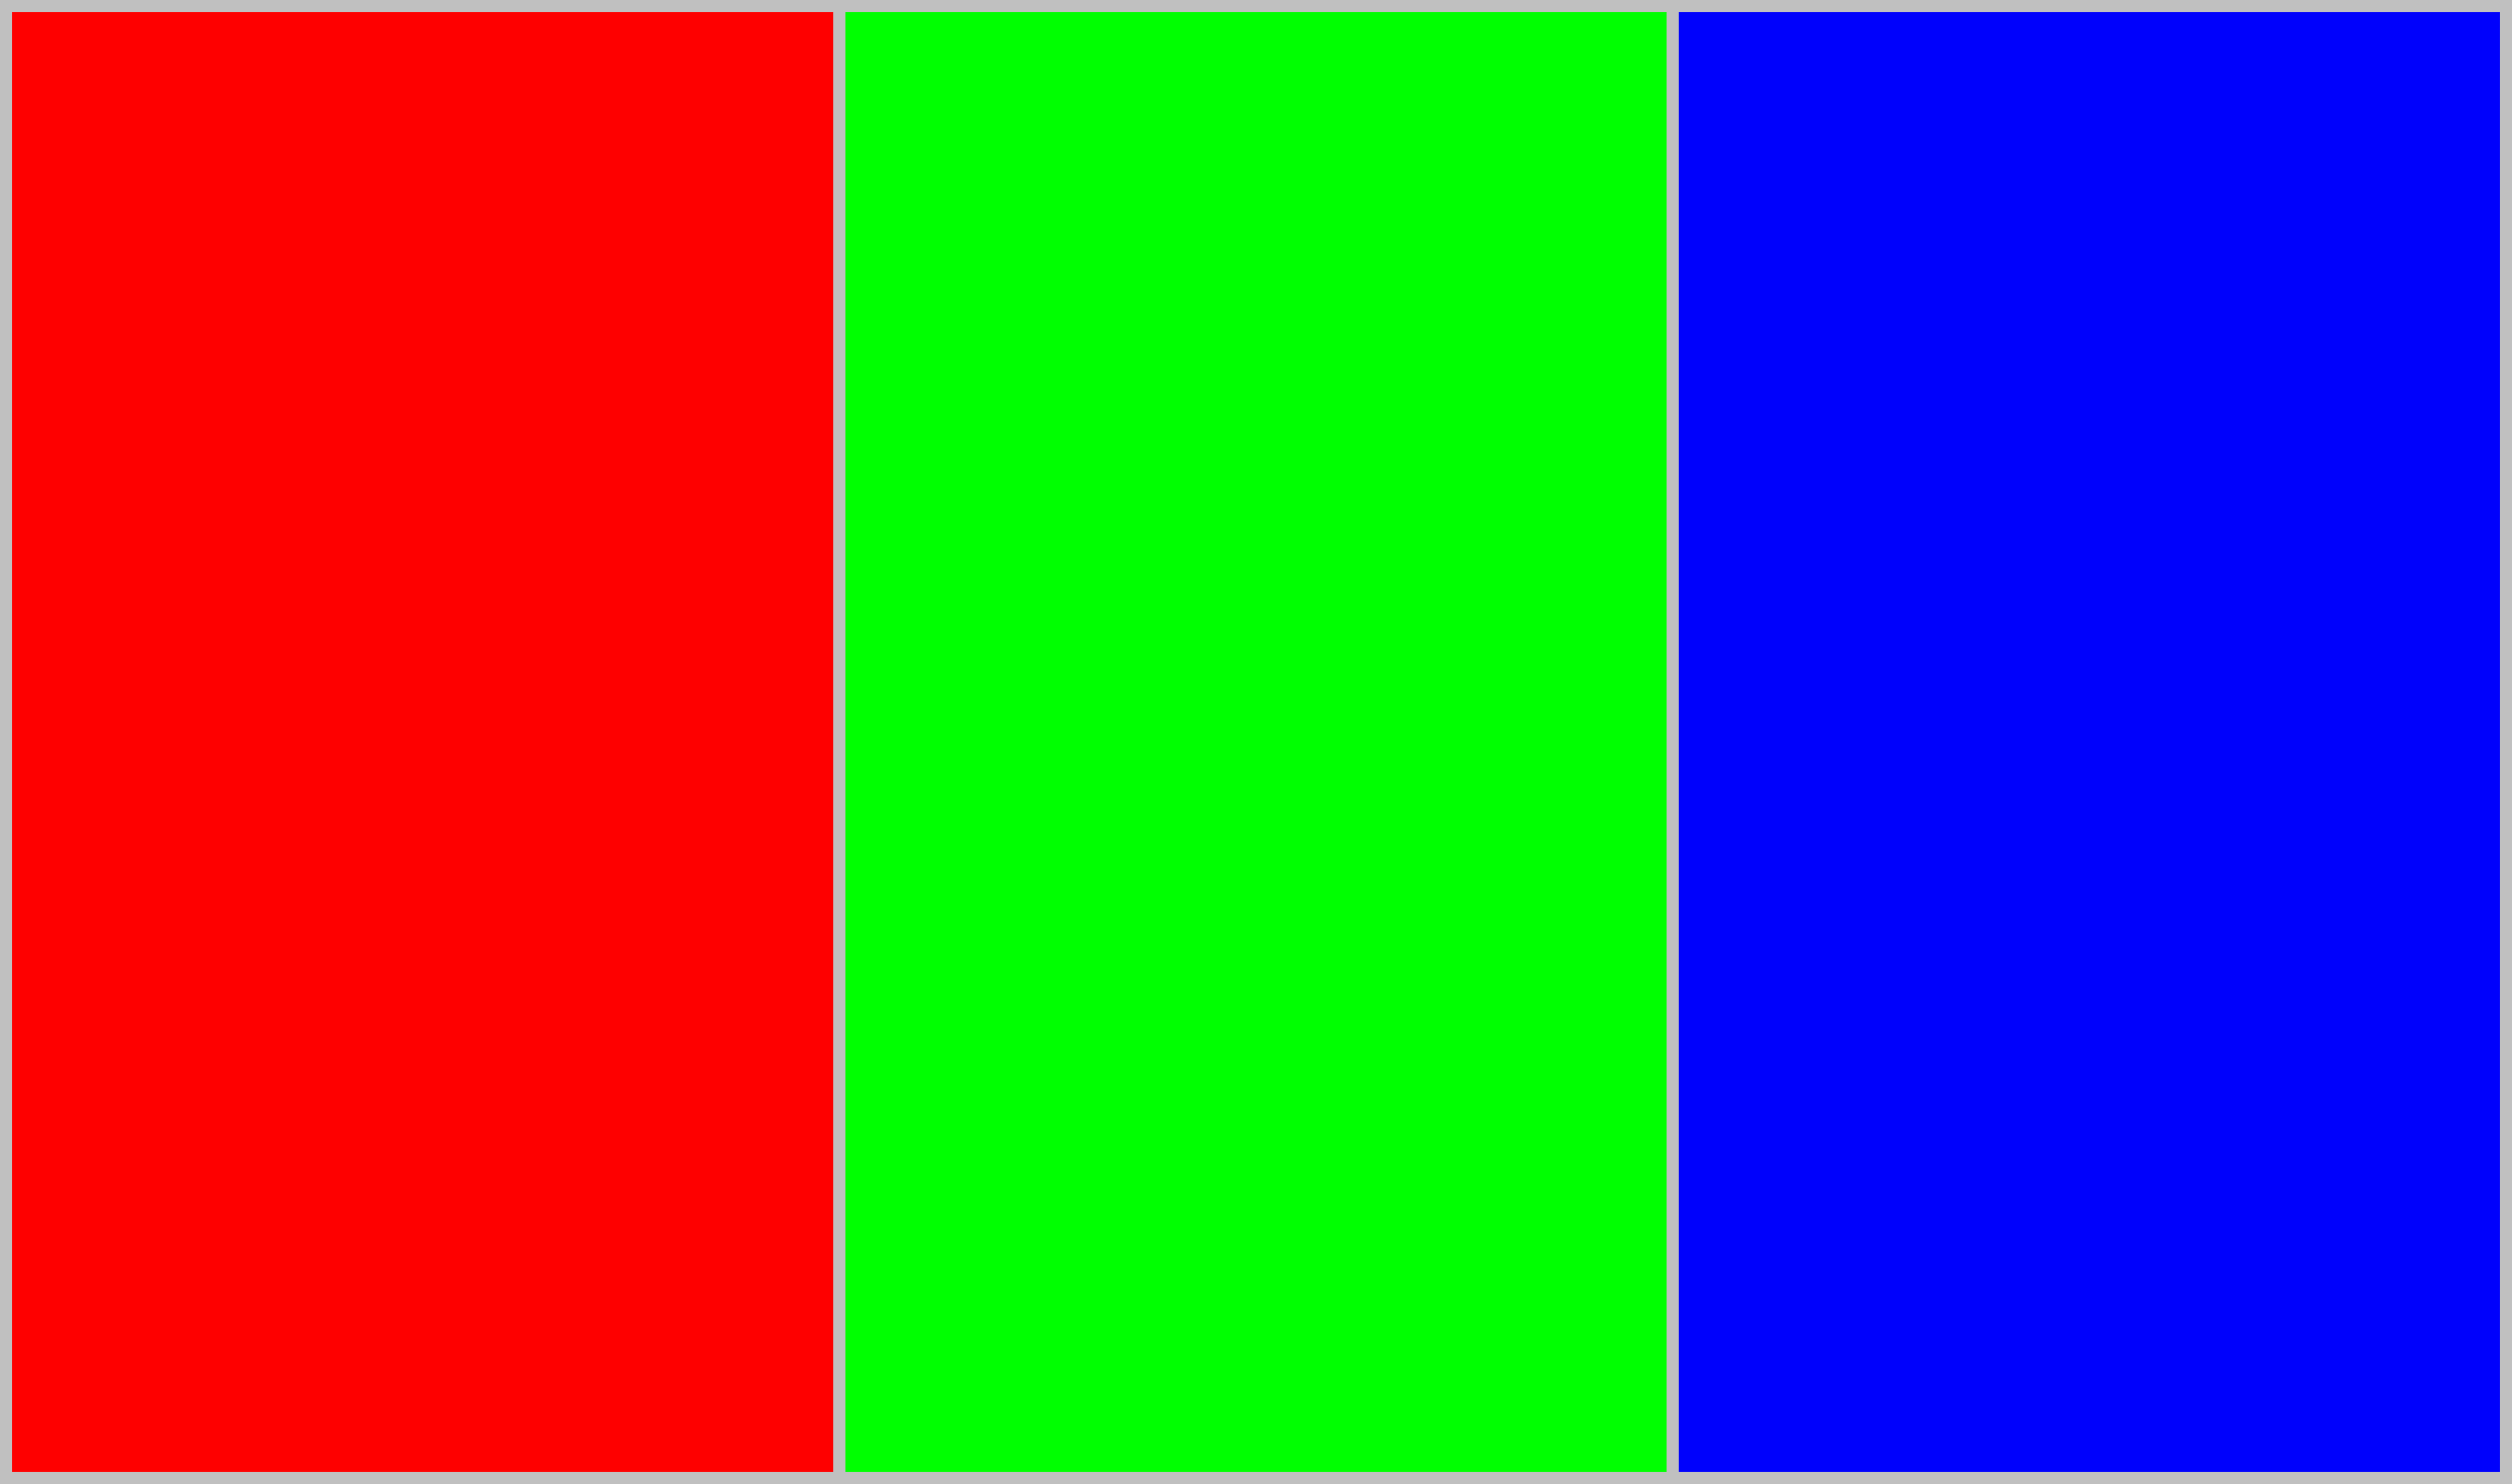 评分结果只作参考) 采用红绿蓝的三基色及